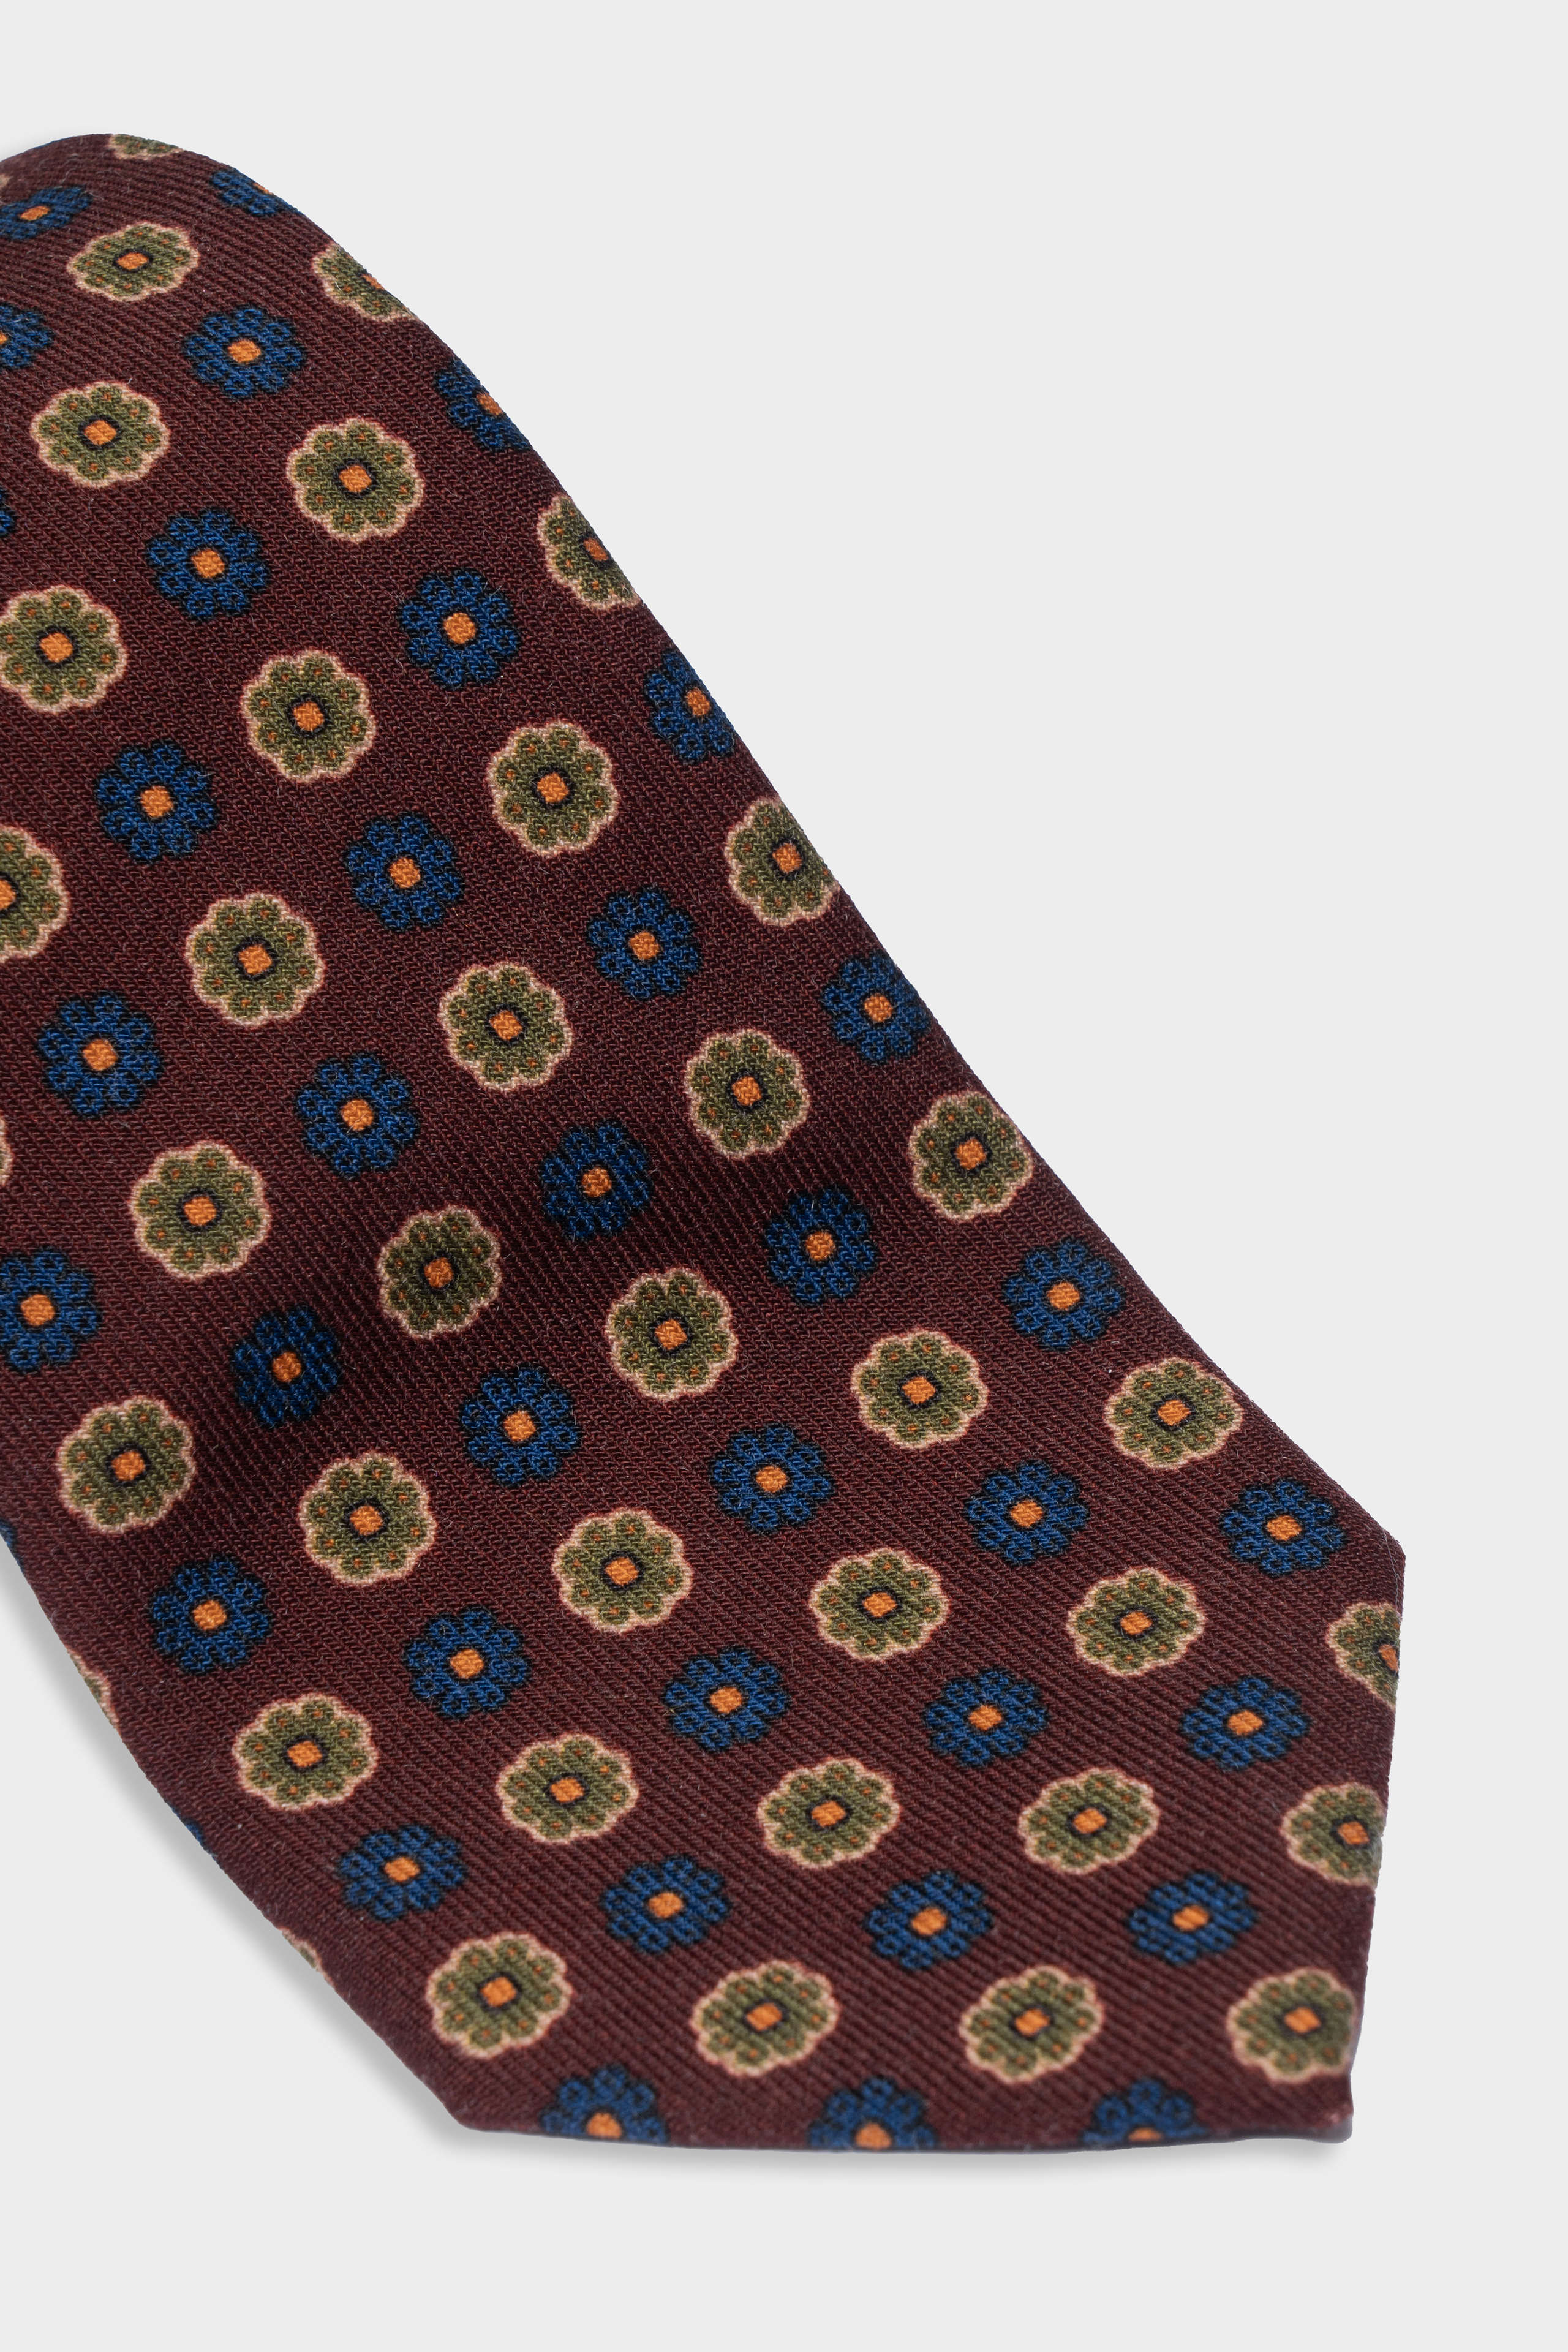 Wool tie - Blue-Brown pattern